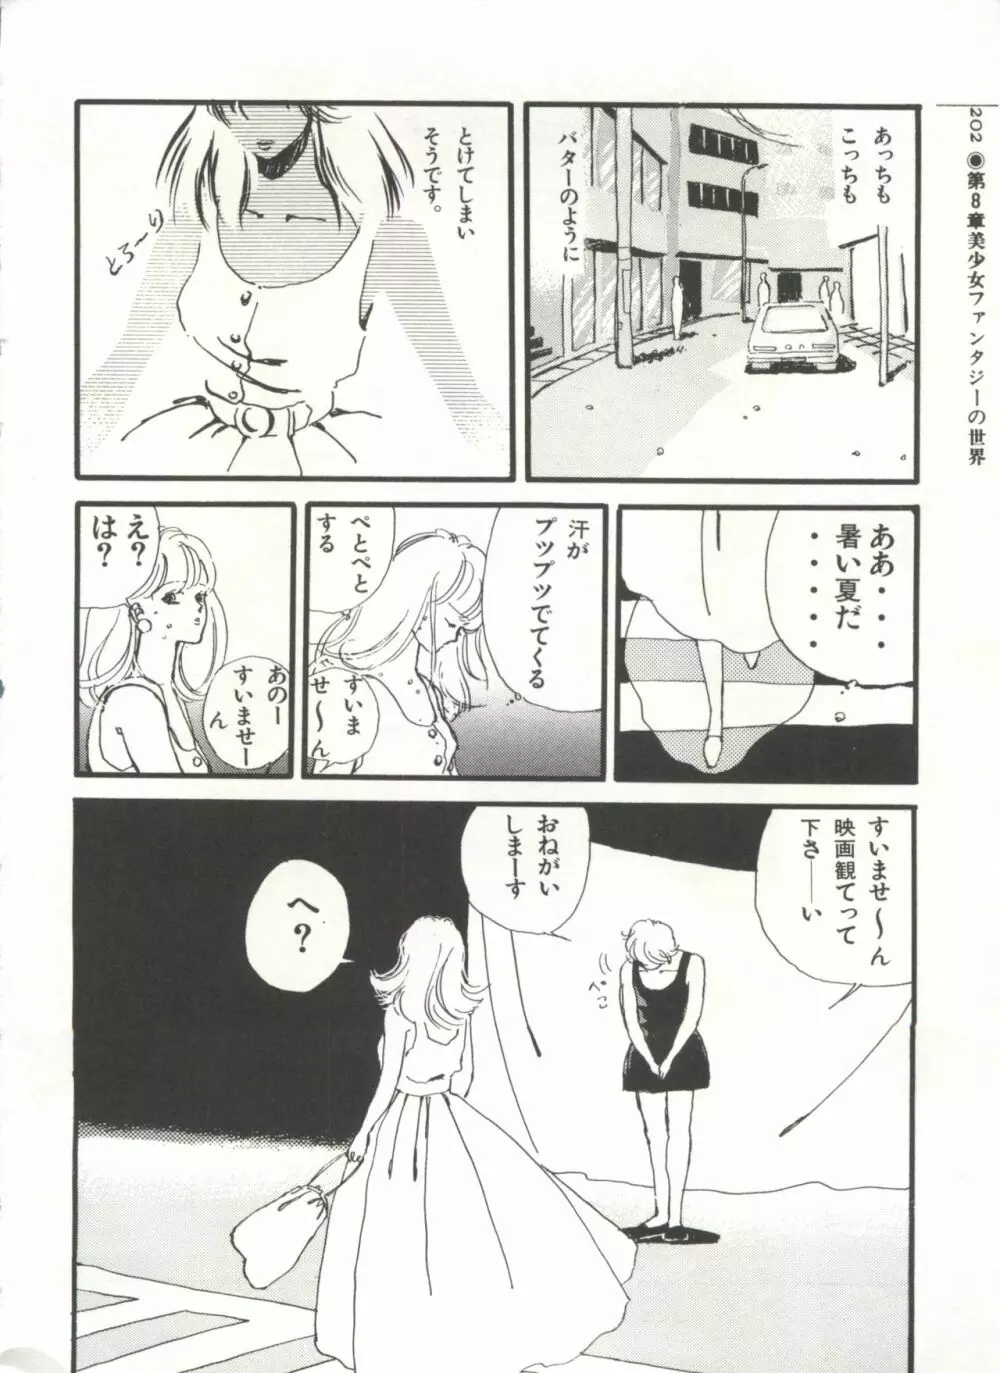 [Anthology] 美少女症候群(2) Lolita syndrome (よろず) 205ページ